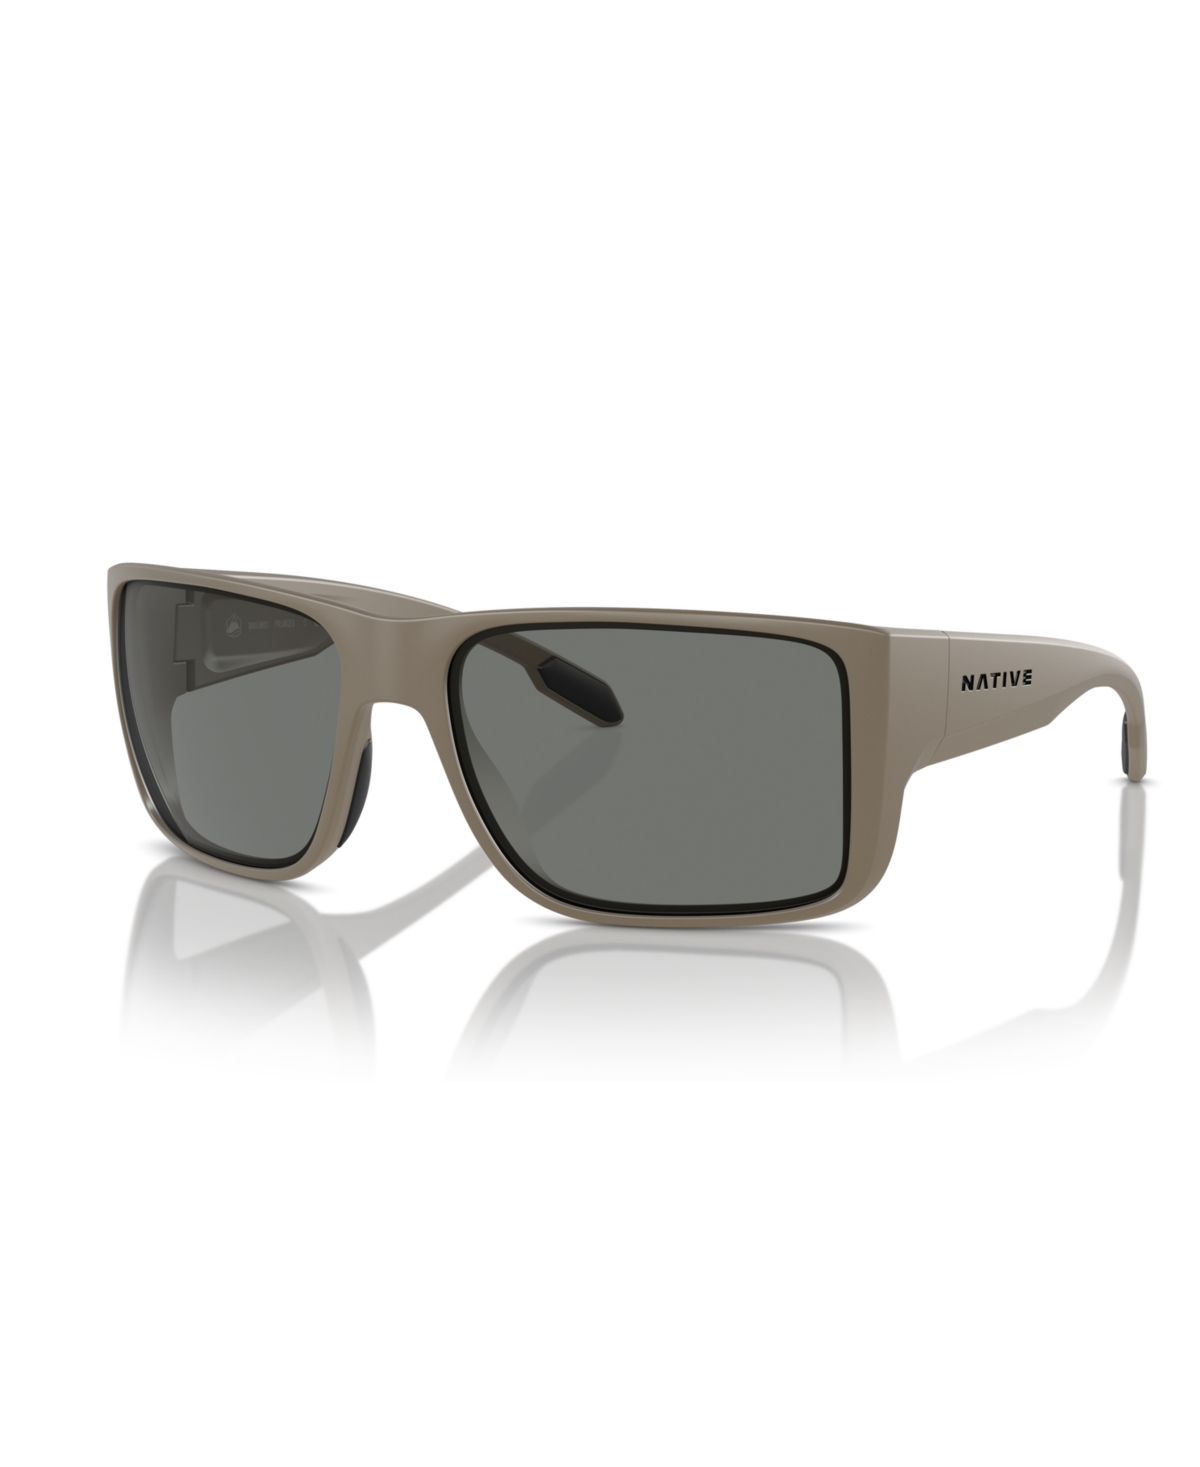 Native Eyewear Native Men's Polarized Sunglasses, Xd9021 64 In Matte Black,gray